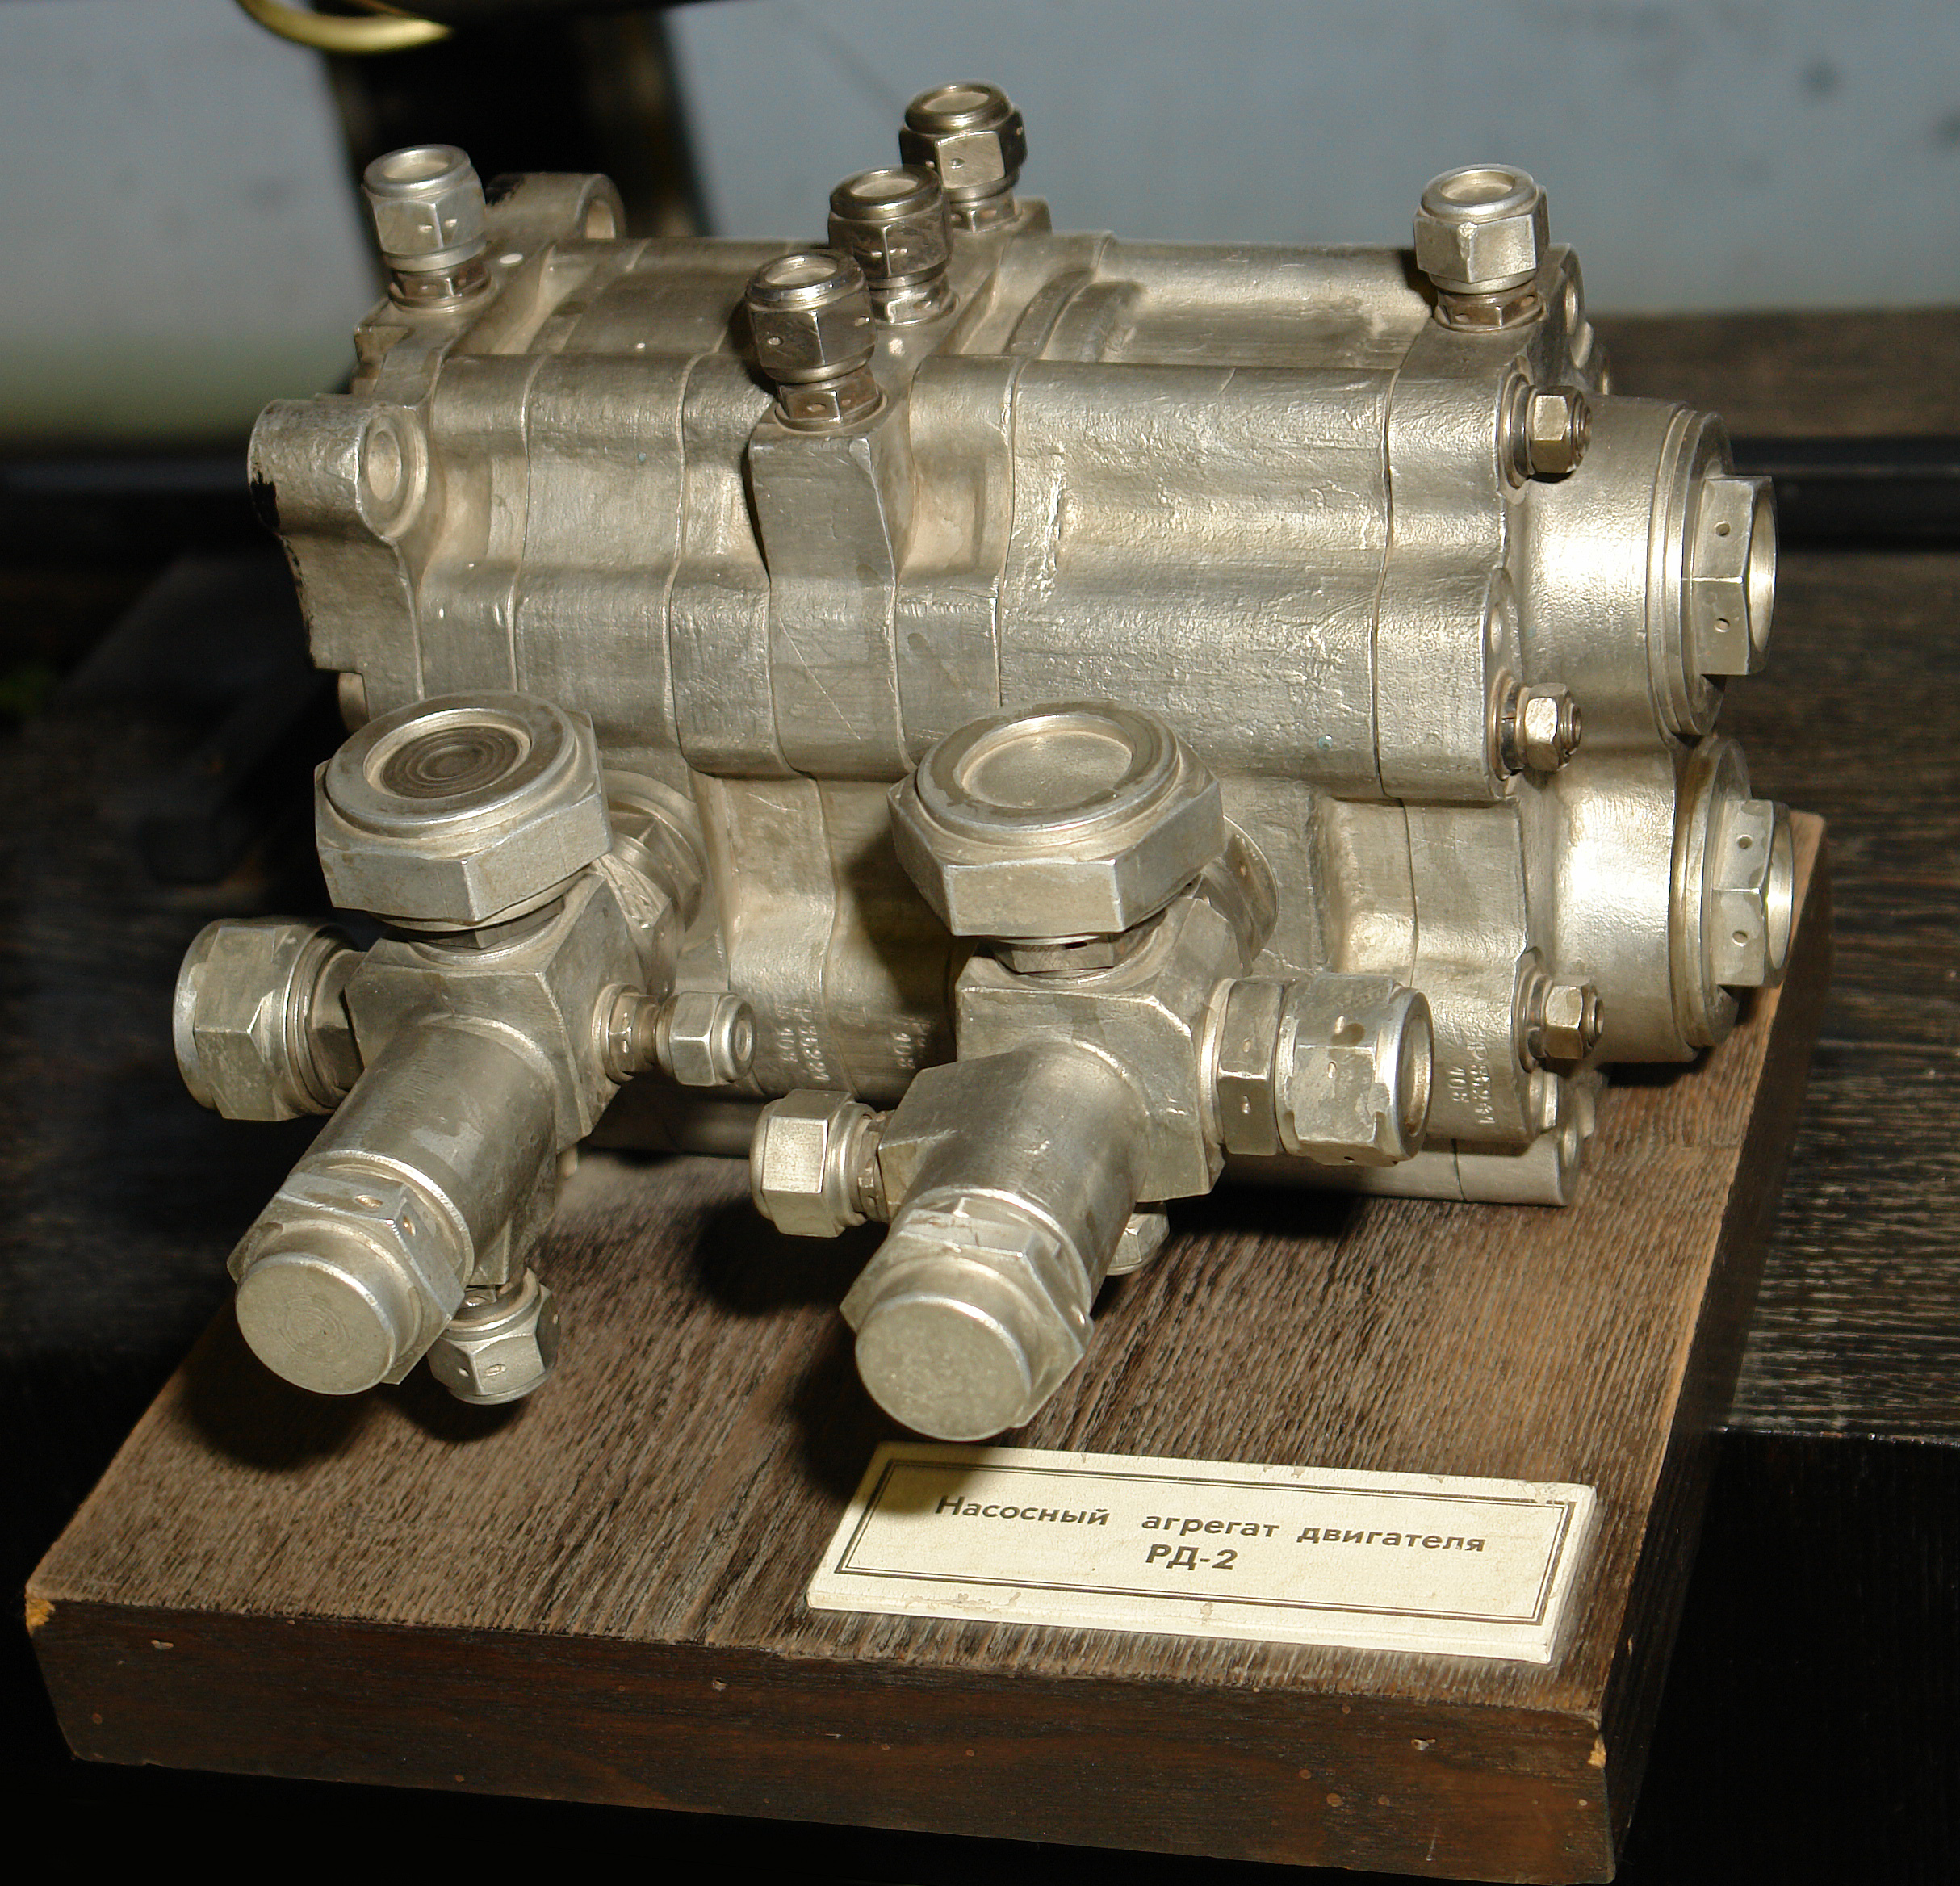 Насосный агрегат двигателя РД-2